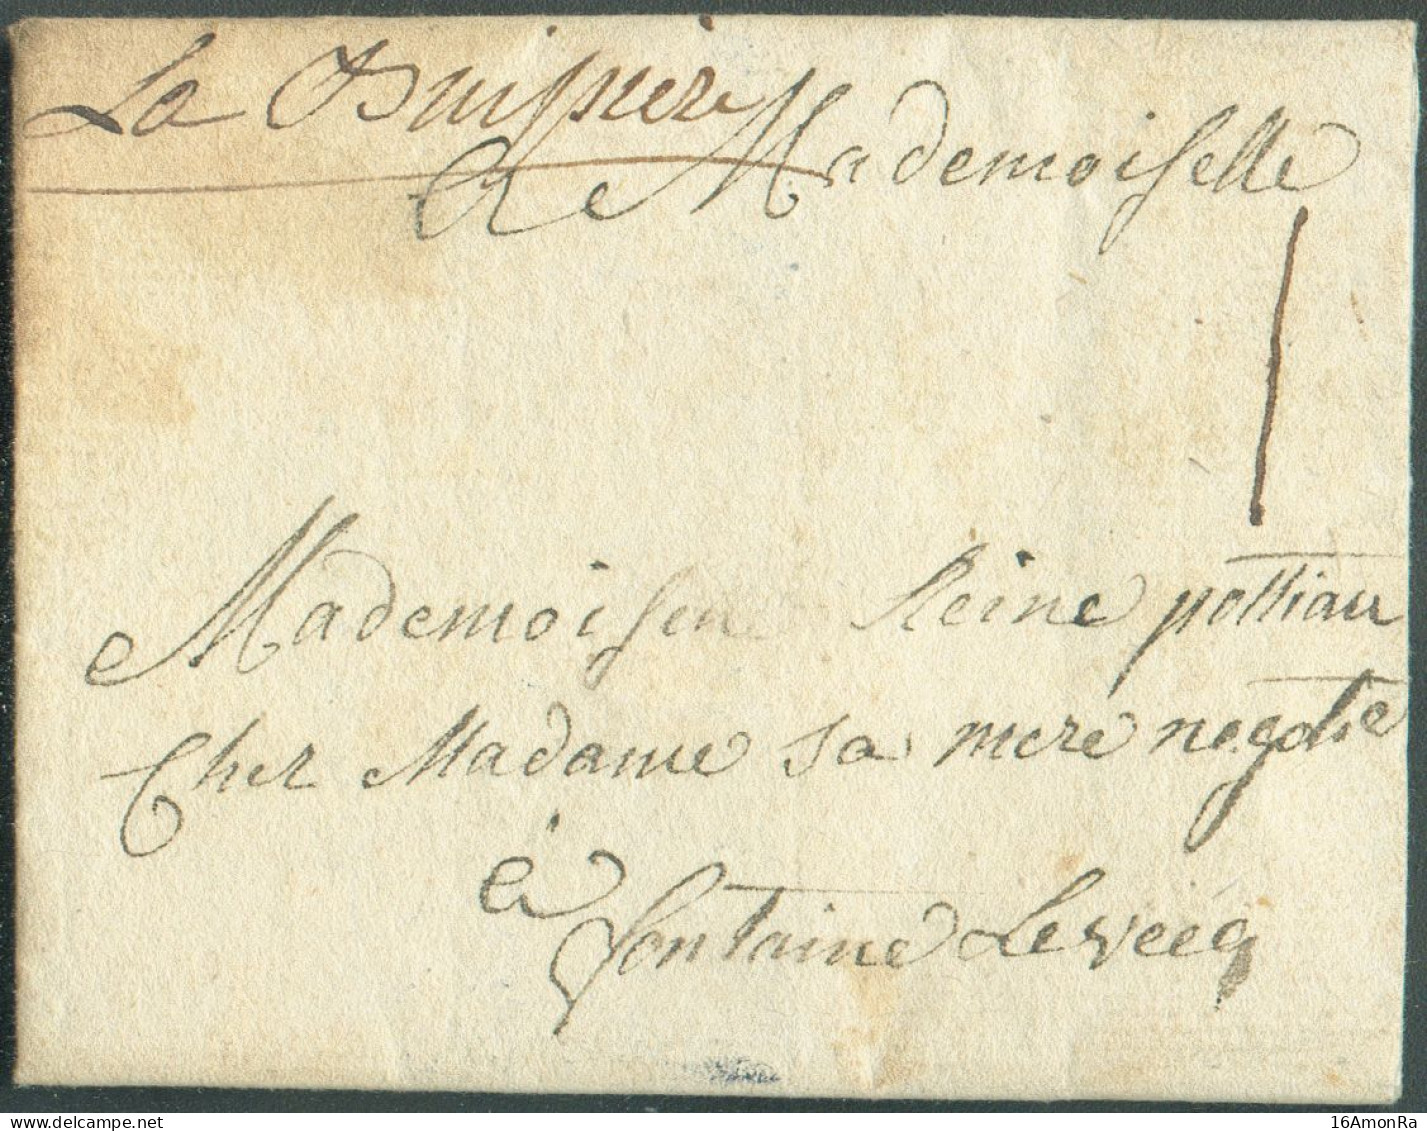 LAC De RANCE Le 8 Septembre 1773, Via (griffe Manuscrite) 'La Buissière' Vers Fontaine-l'Evêque; Port '1' Sol. - Superbe - 1714-1794 (Paises Bajos Austriacos)